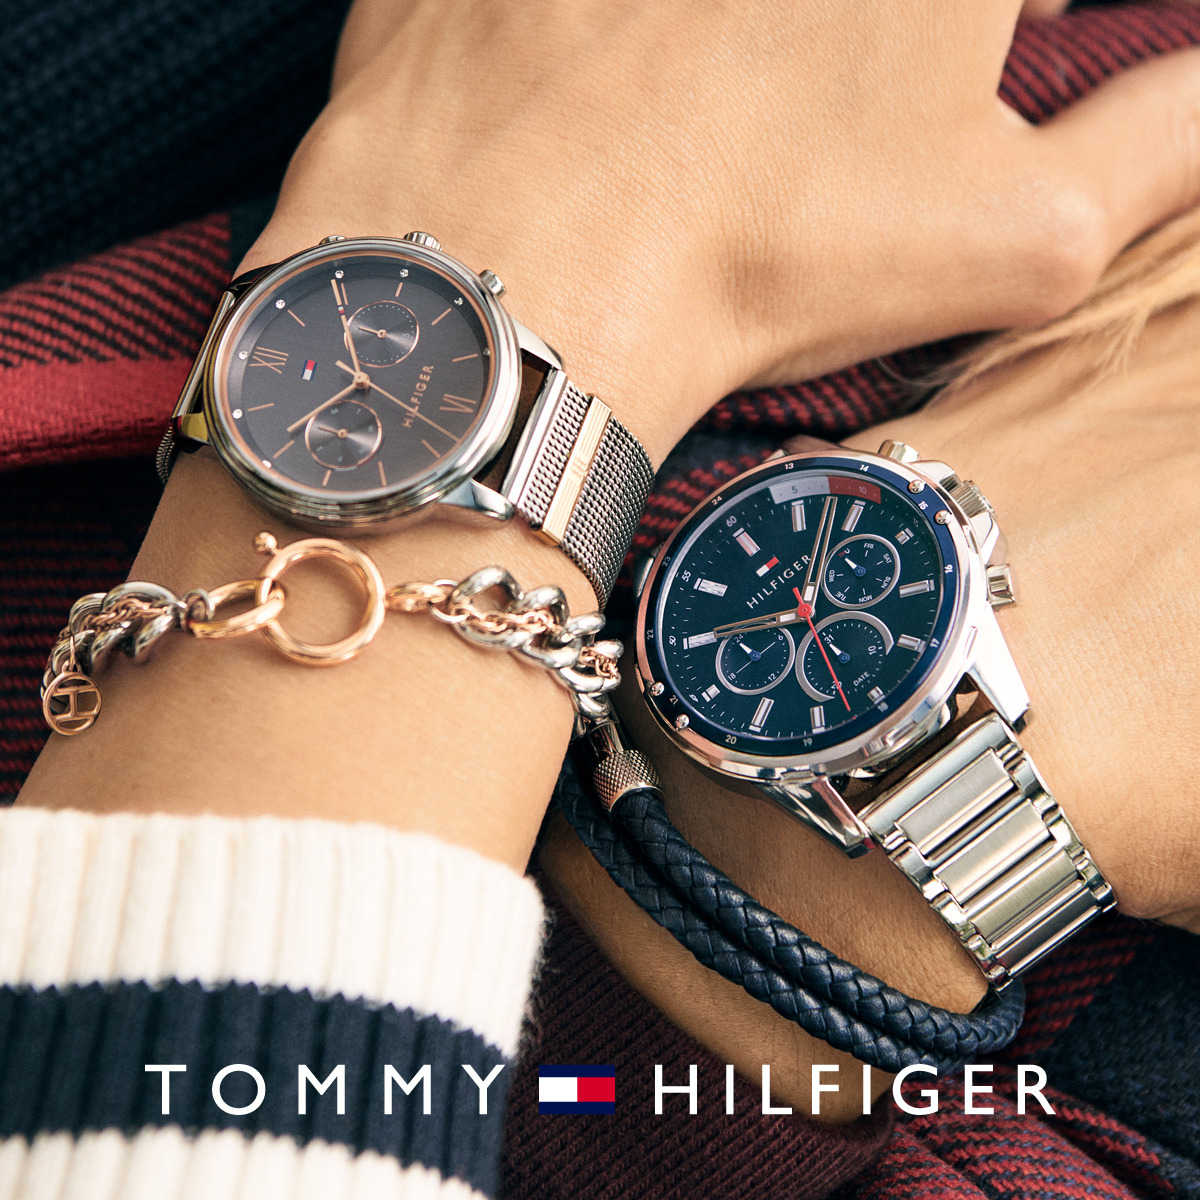 Tommy,TH,TommyHilfiger,Watch,時尚,流行,余文樂,水鬼,水鬼錶,潮錶,潮牌,手錶,腕錶,手表,腕表,設計師品牌